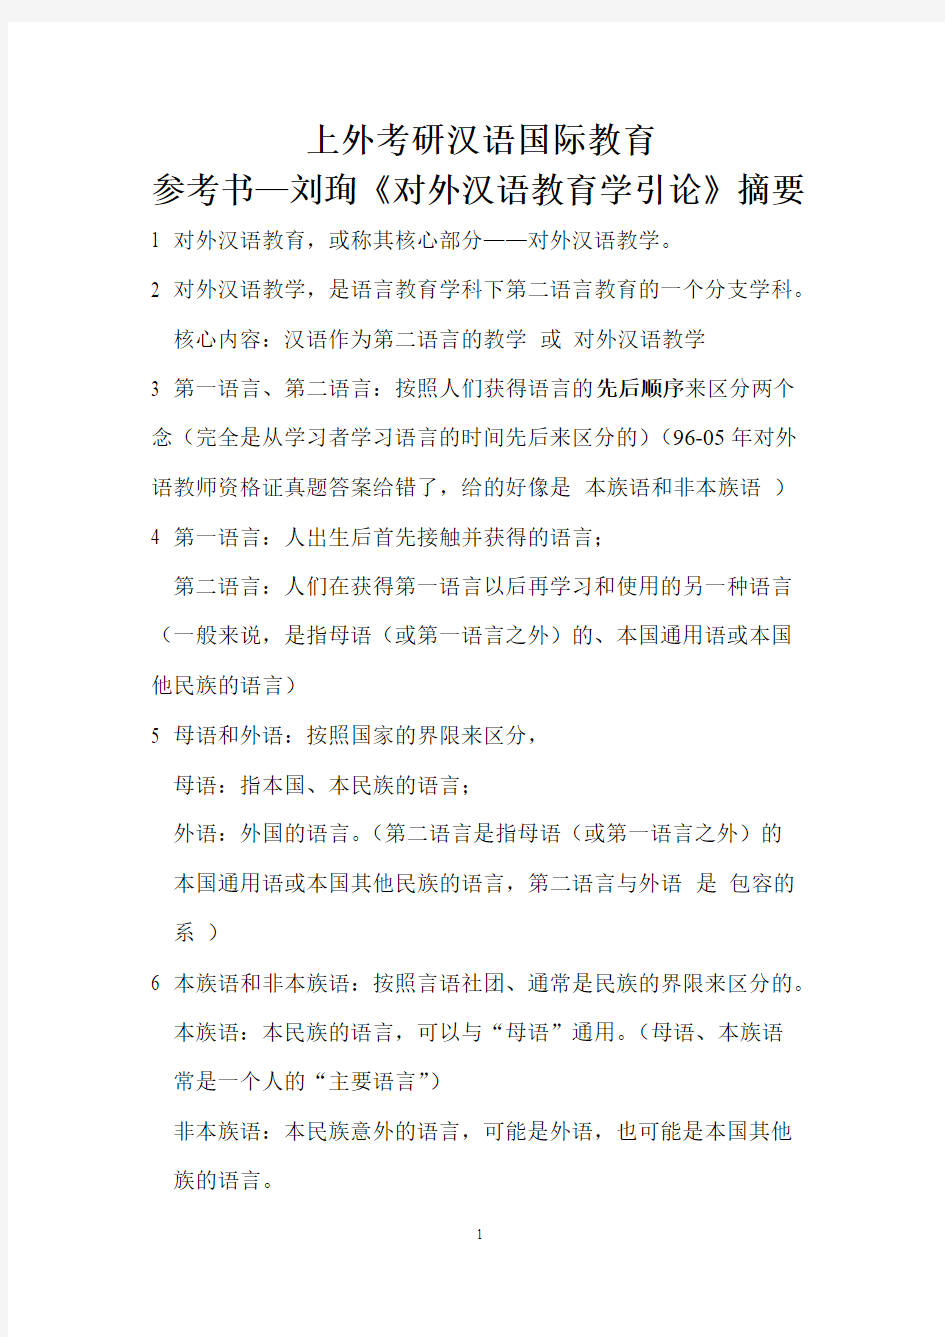 上外考研汉语国际教育参考书—刘珣《对外汉语教育学引论》摘要